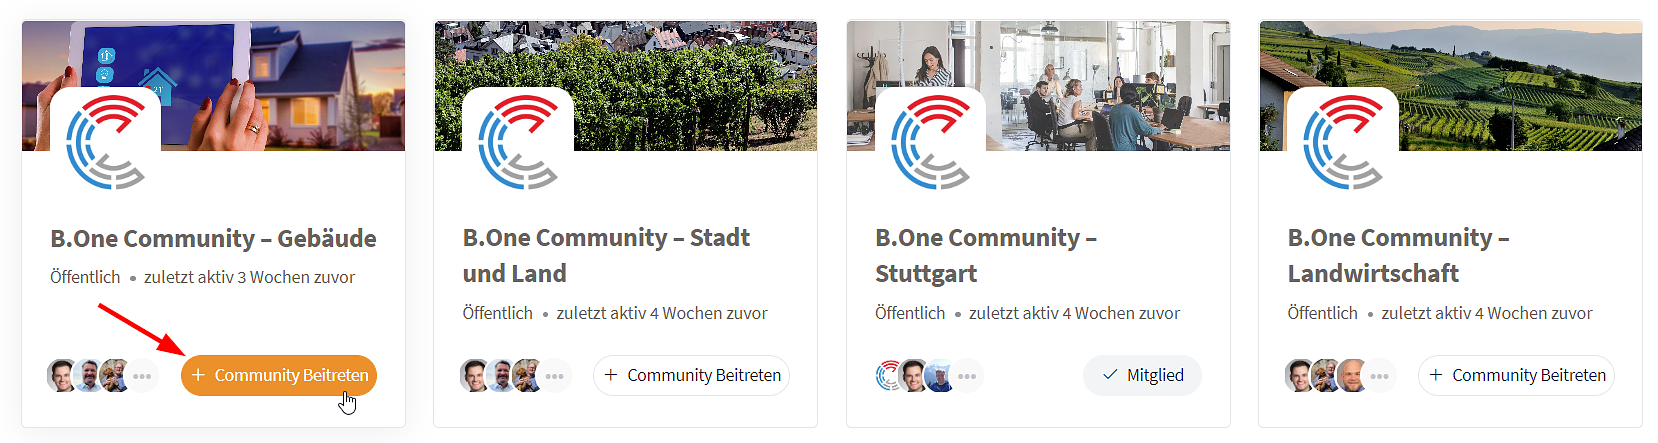 B.One Community: Einer öffentlichen Community als Mitglied beitreten